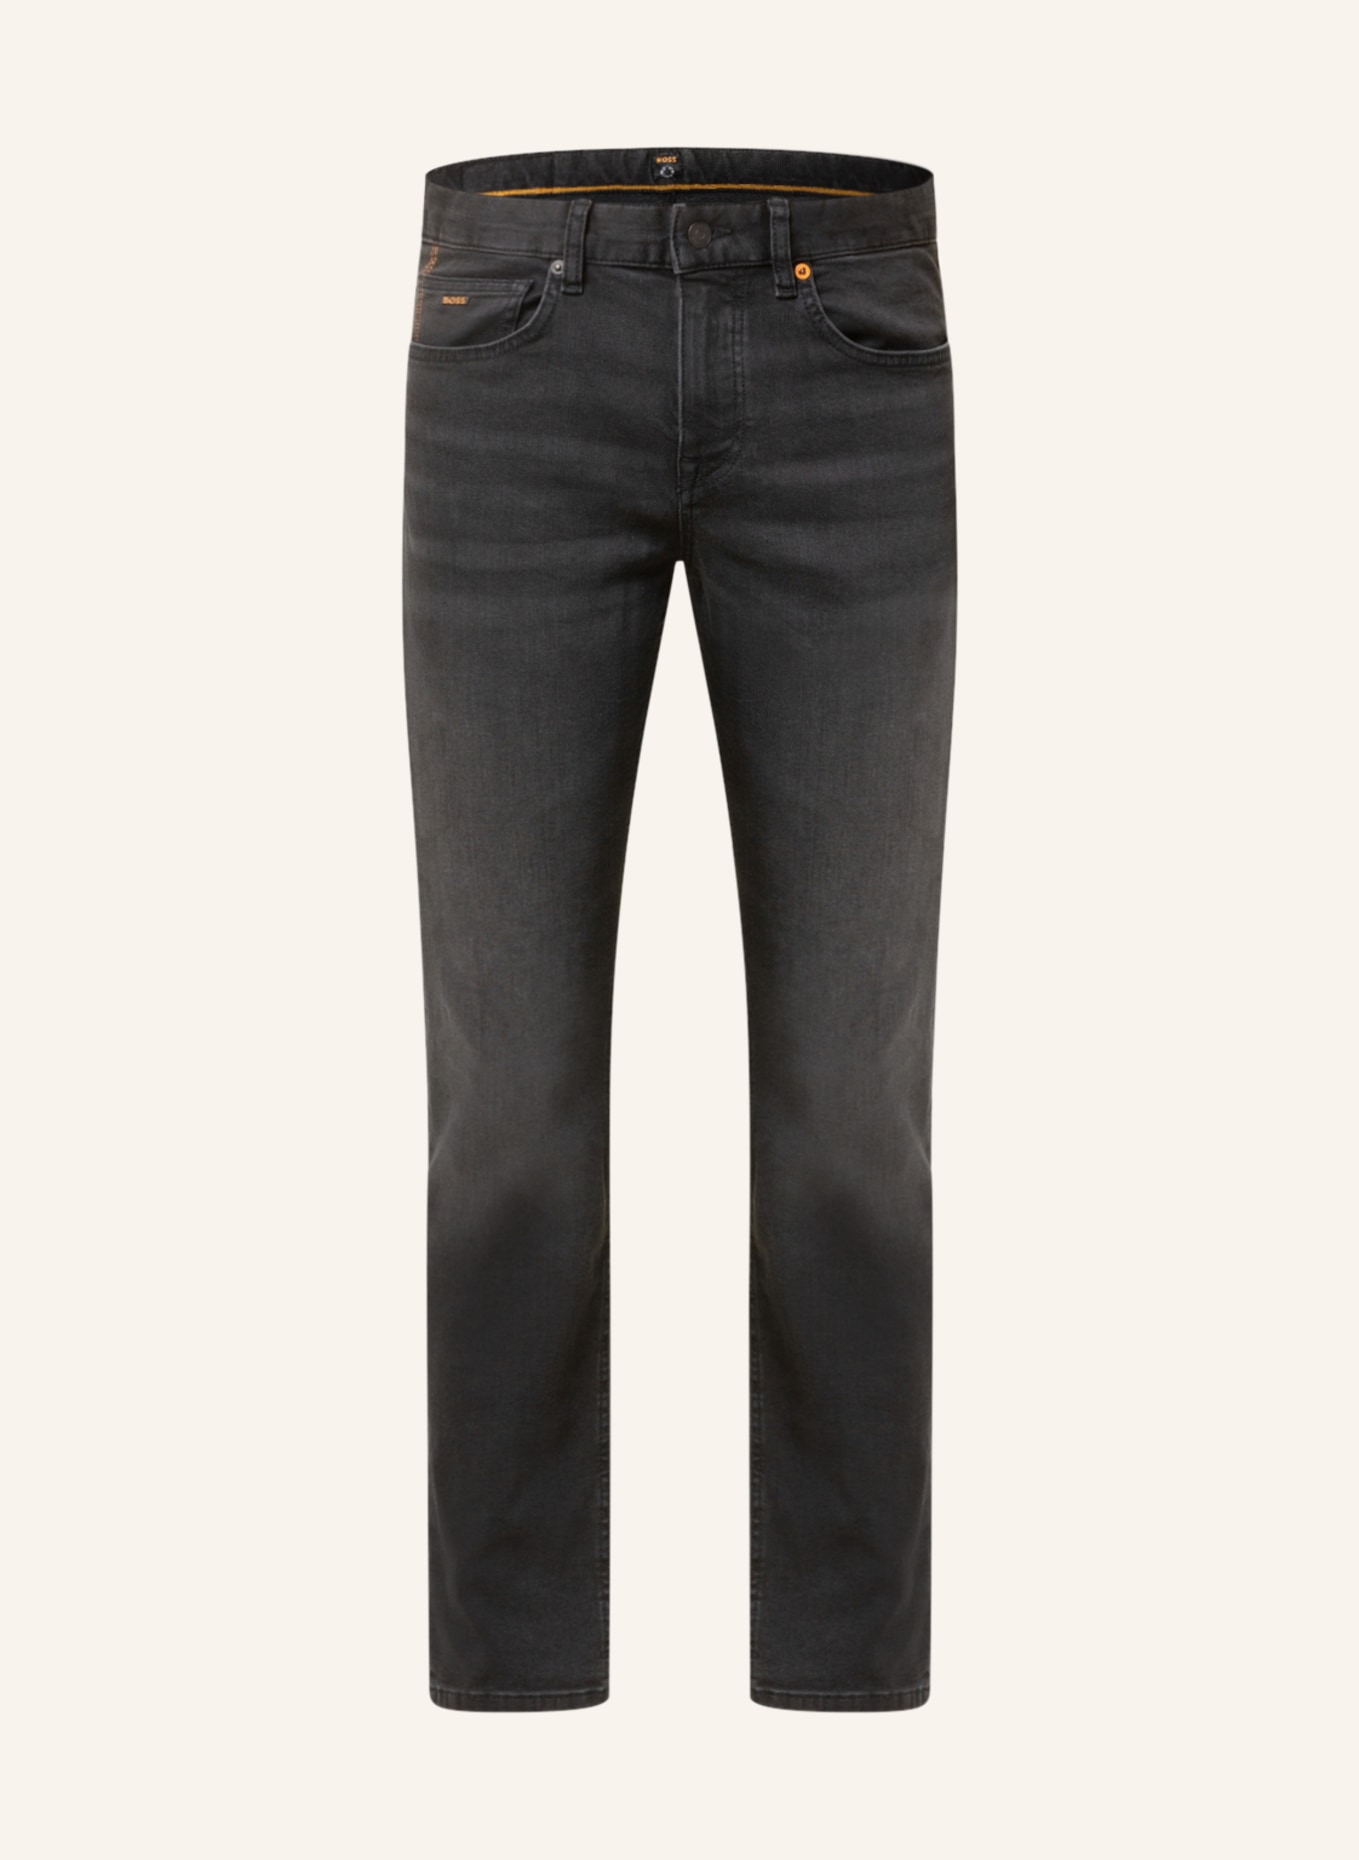 BOSS Jeans DELAWARE Slim Fit, Farbe: 008 BLACK (Bild 1)